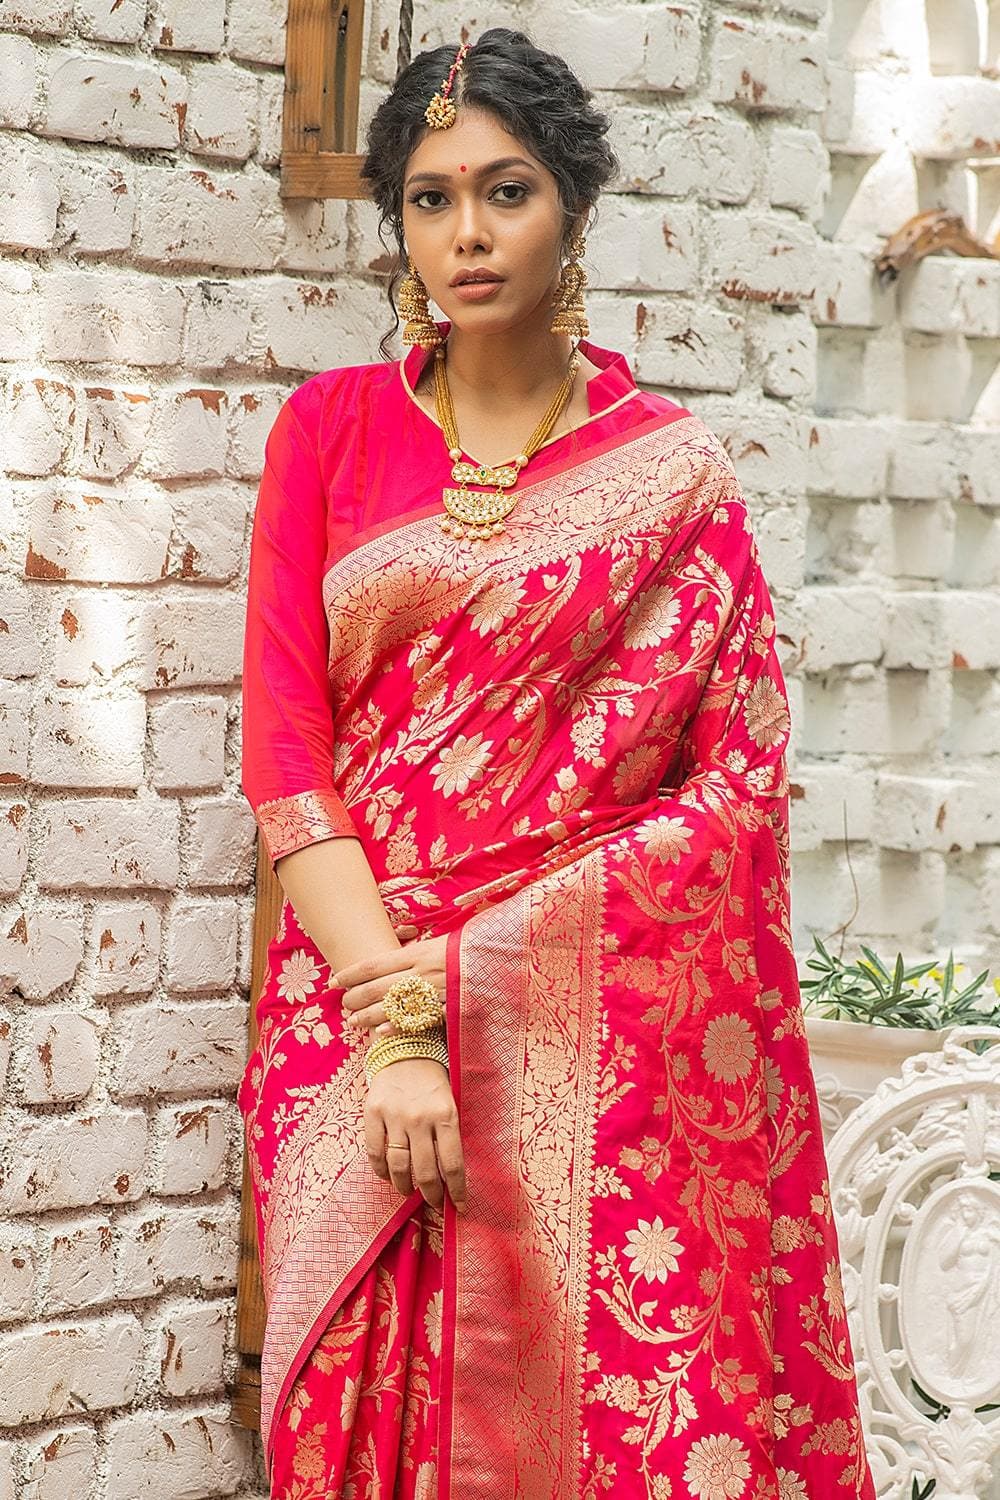 Magenta Pink Banarasi Saree